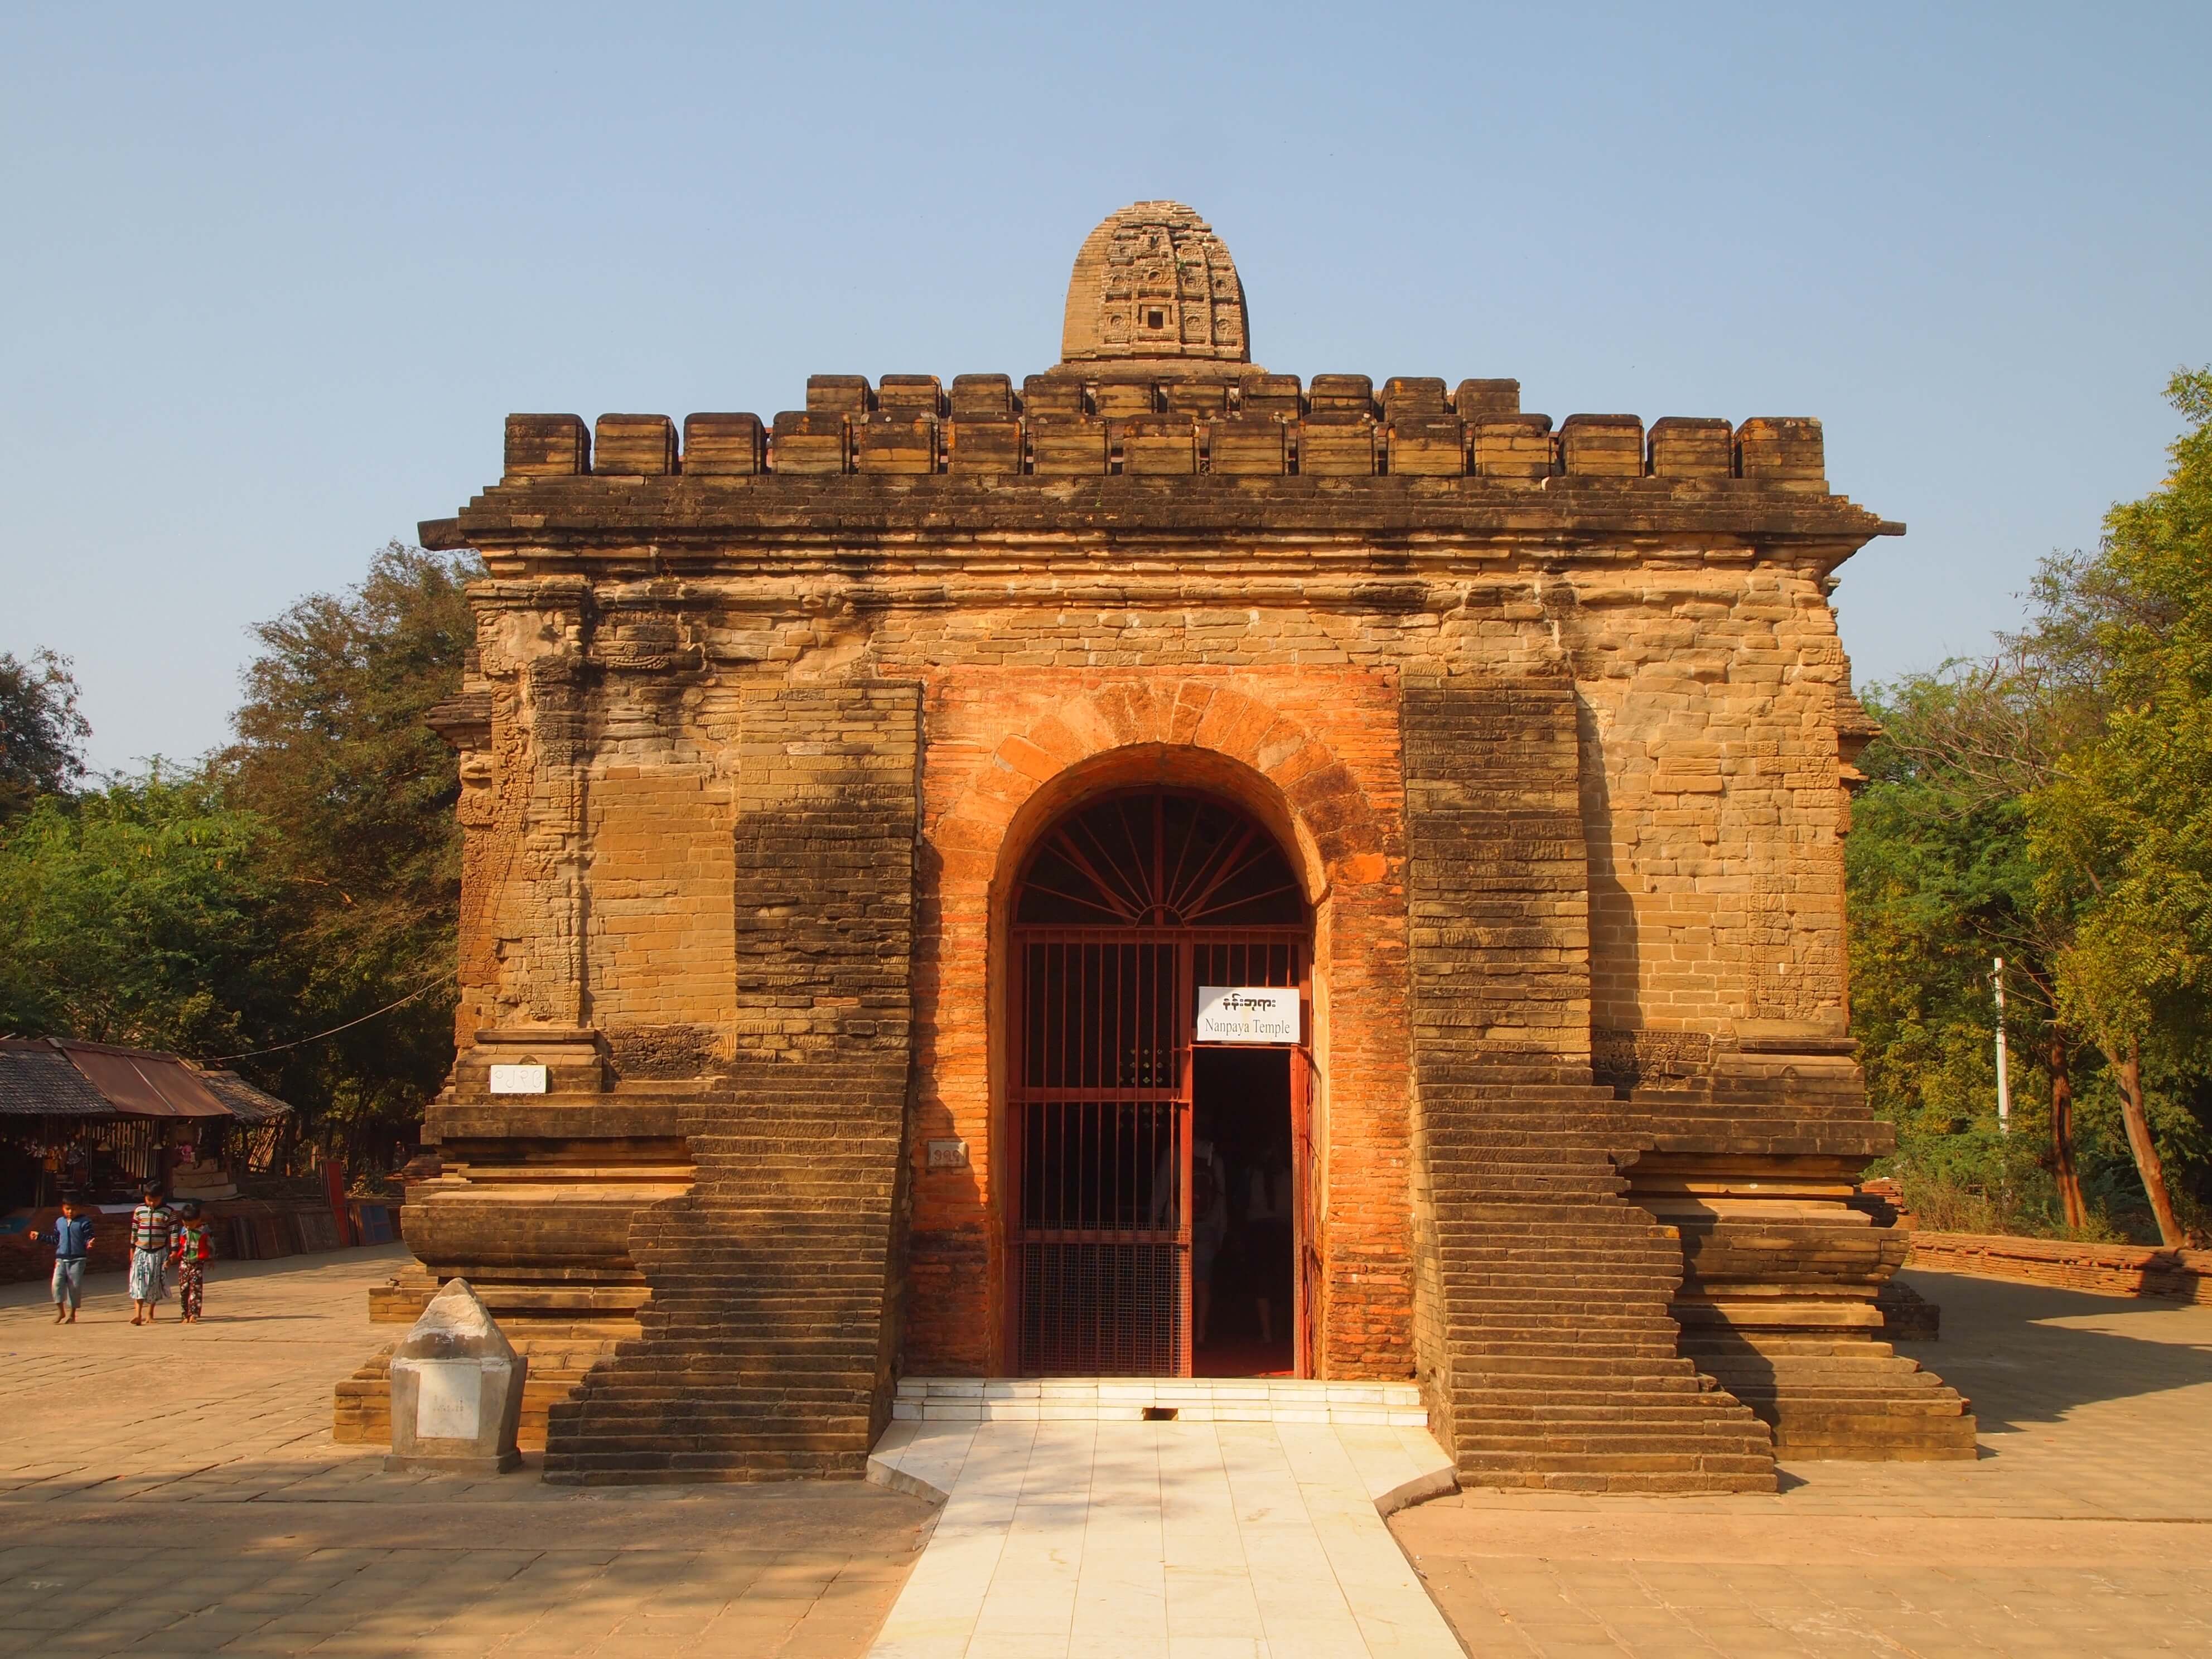 நன்பயா கோவில், மியான்மர் (பர்மா)